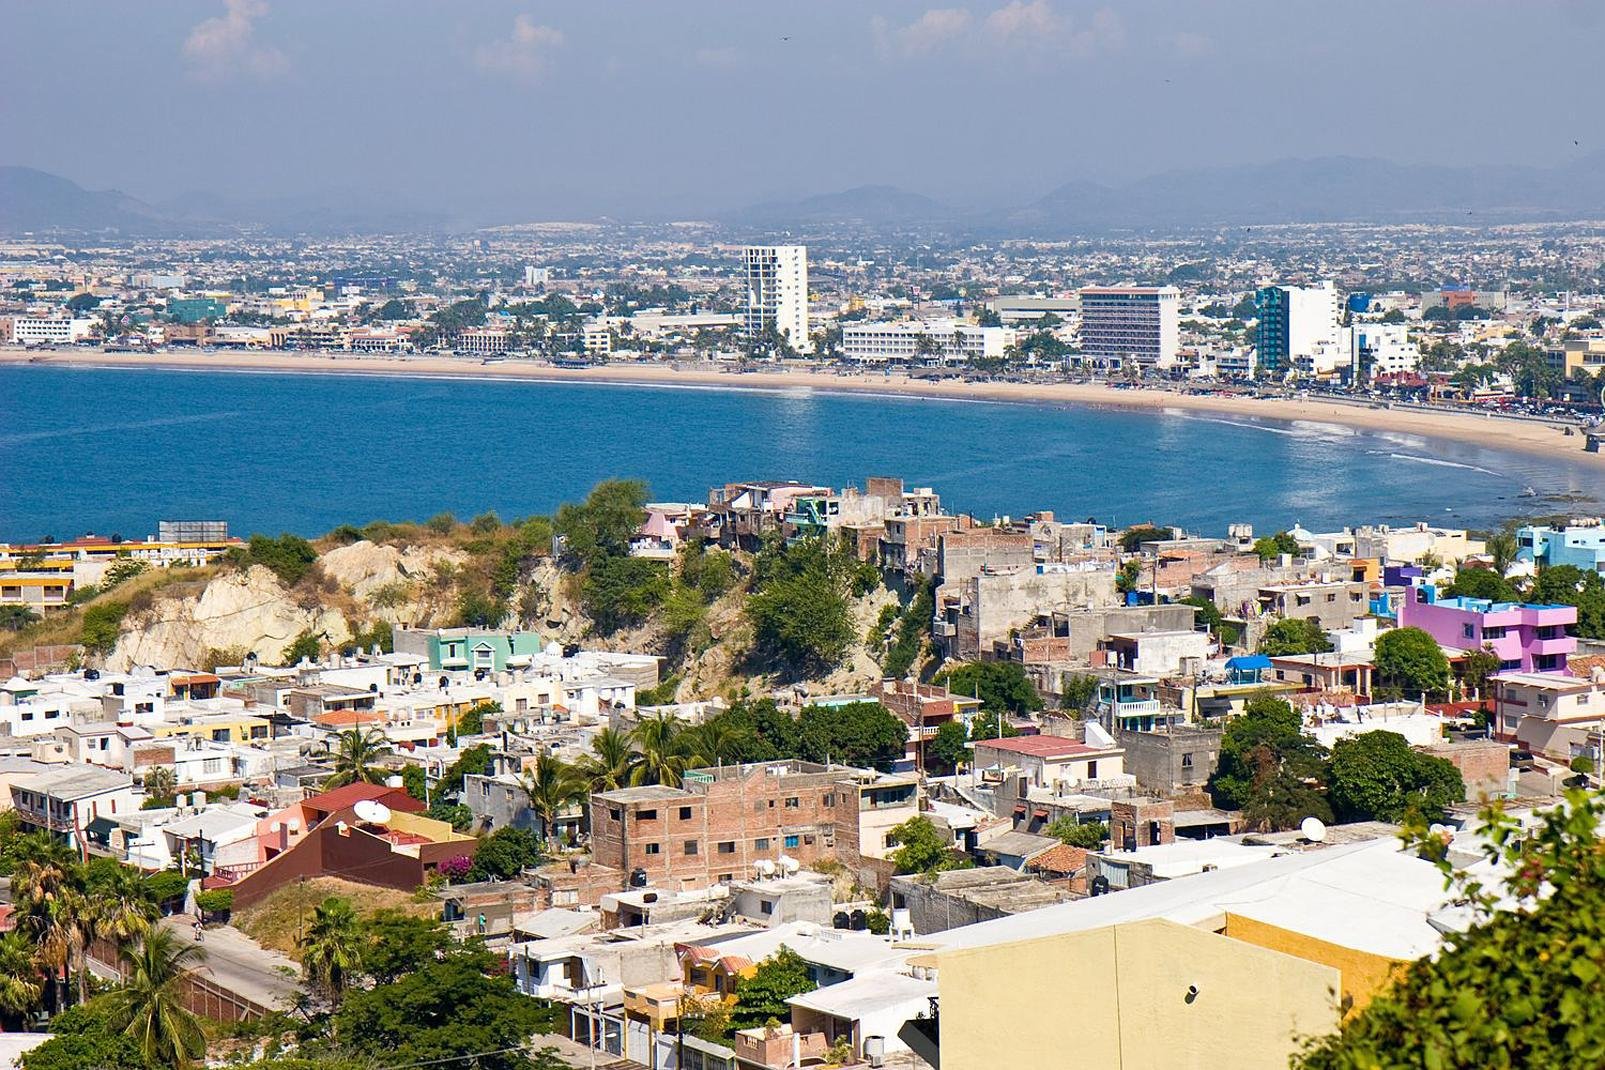 Mazatlán est connue comme la Perle du Pacifique, elle est en outre un célèbre port situé sur la côte mexicaine du Pacifique, qui compte des sites et lieux d'intérêt touristiques importants, comme par exemple son phare, sa jetée, l'Isla de Piedra (l'île de pierre) et bien sûr son aquarium, le plus grand du Mexique.
Mazatlán se transforme au cours de ses importantes fêtes populaires. La Semaine Sainte ...